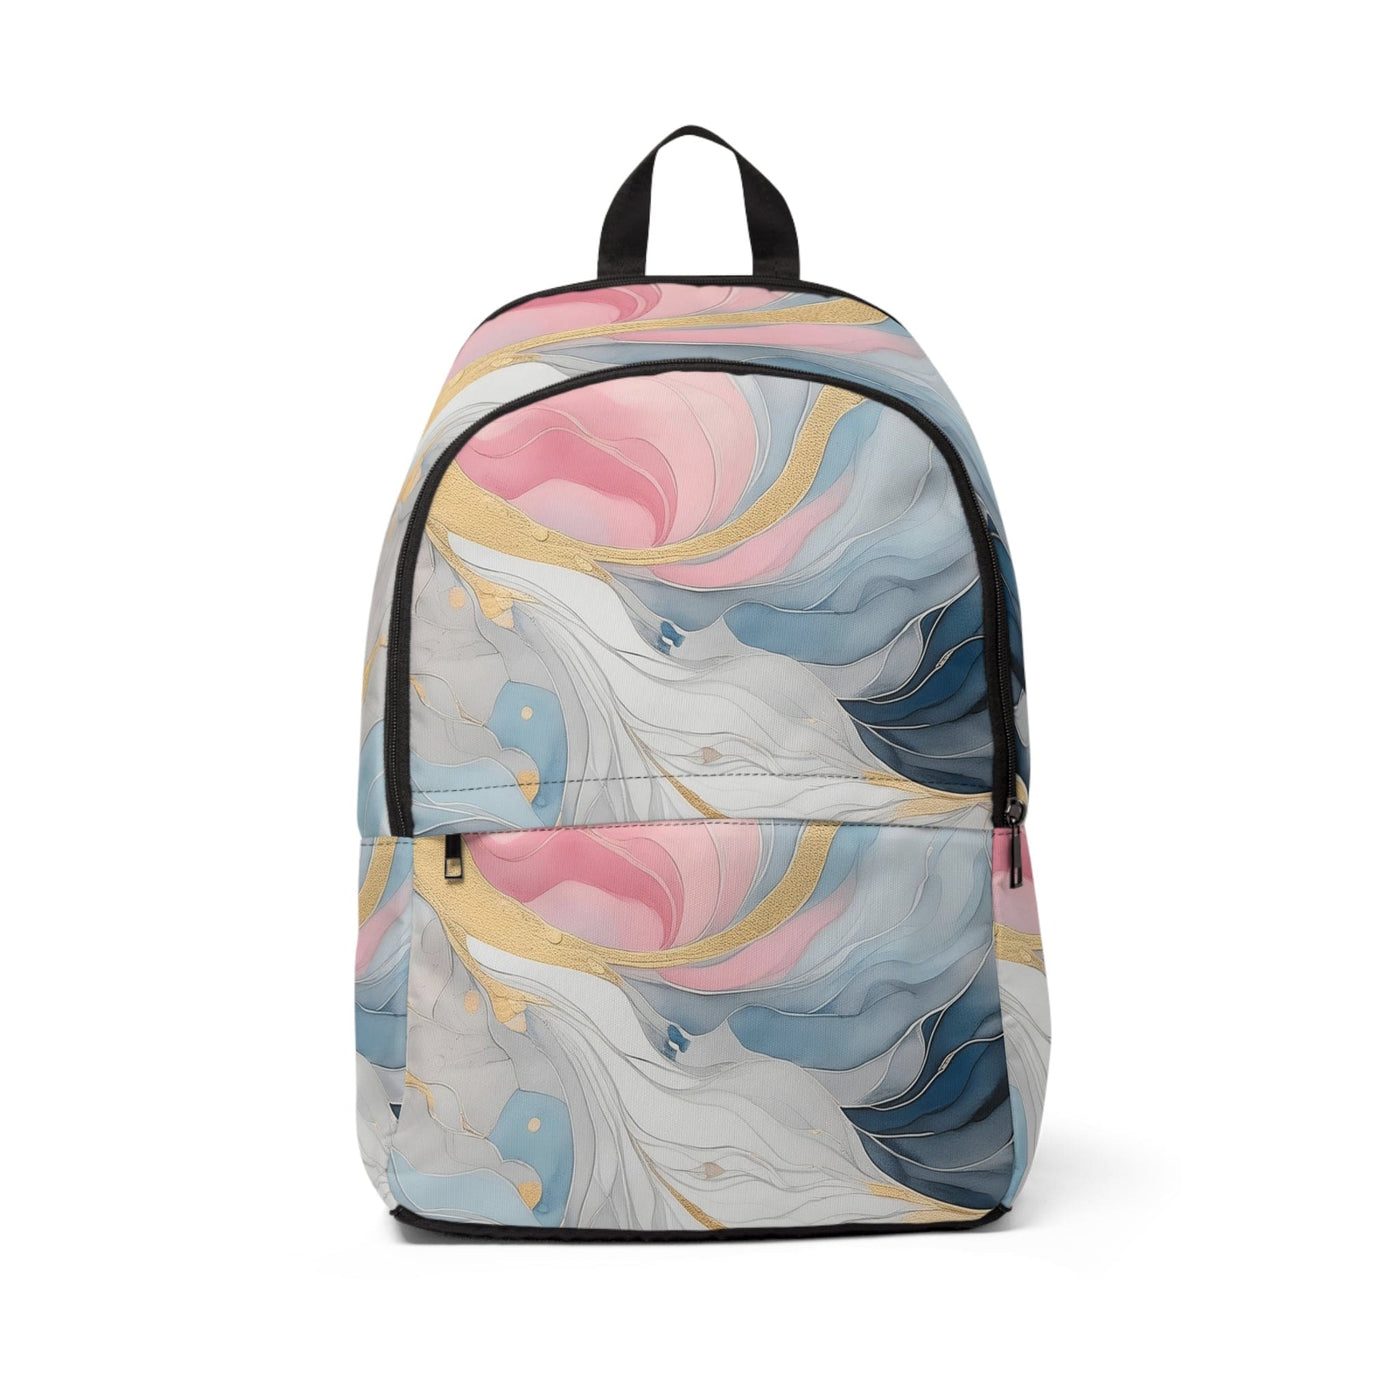 Fashion Backpack Waterproof Marble Cloud Of Grey Pink Blue 5522 - Bags